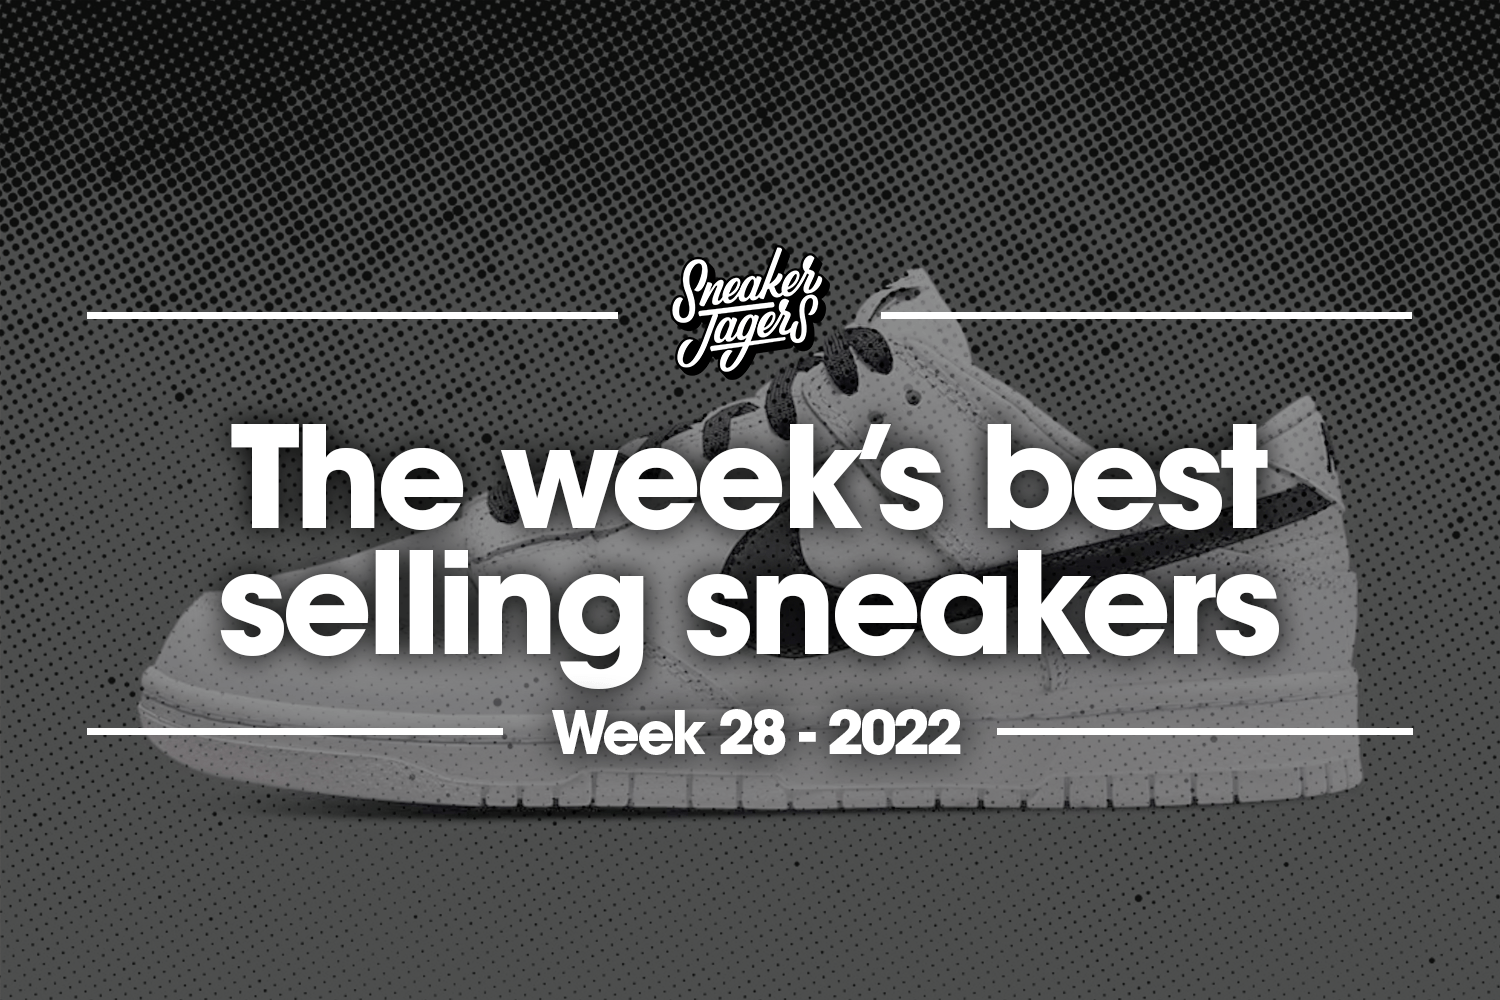 The 5 best-selling sneakers of week 28